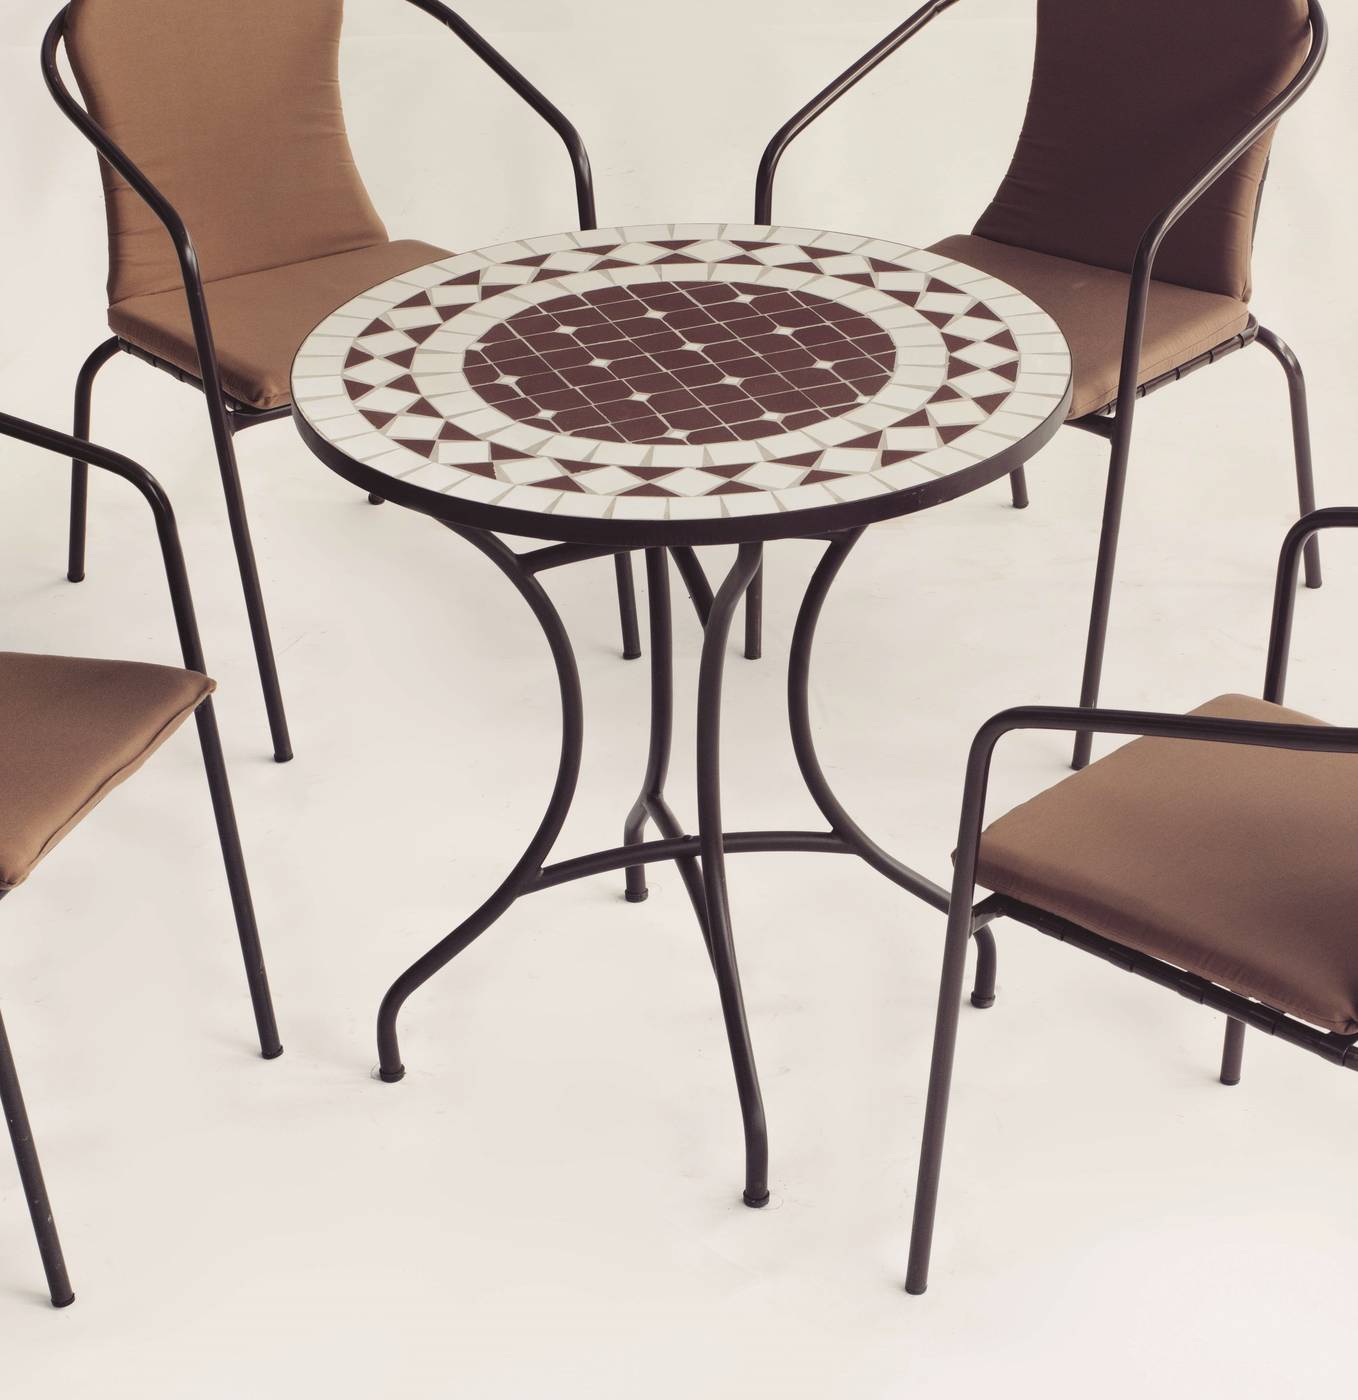 Conjunto Mosaico Oran-Brasil - Mesa de forja color bronce, con tablero mosaico de 75 cm + 4 sillones apilables de wicker sintético.